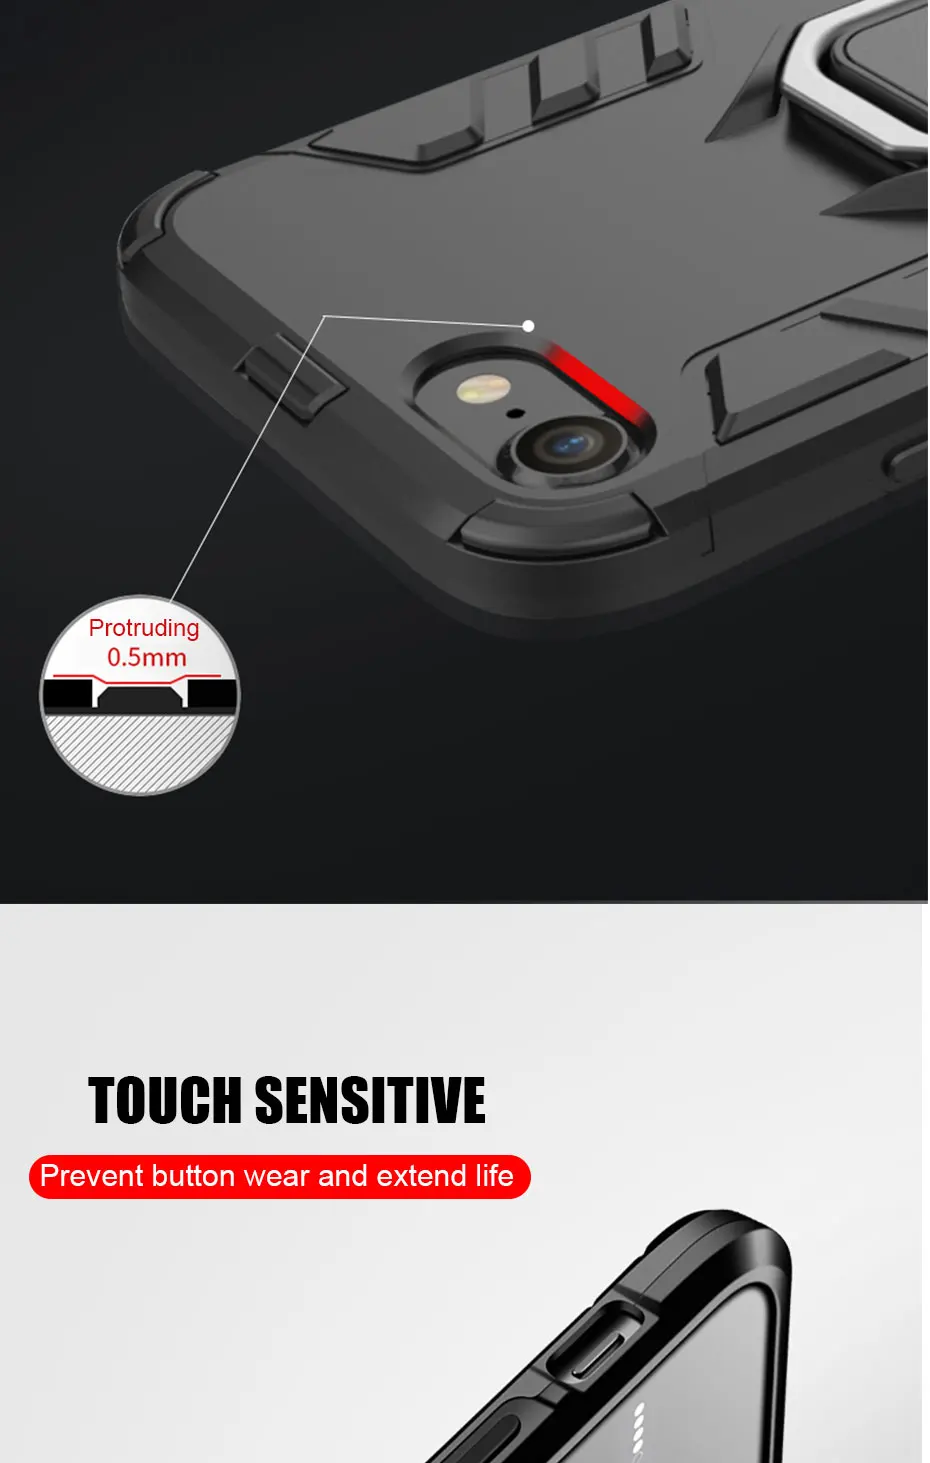 ZNP противоударный защитный чехол-подставка для iphone 6, 6s, 7 Plus, 5 5S, с кольцом-держателем, чехол s для iphone 7, 8, X Plus, SE, чехол для телефона s